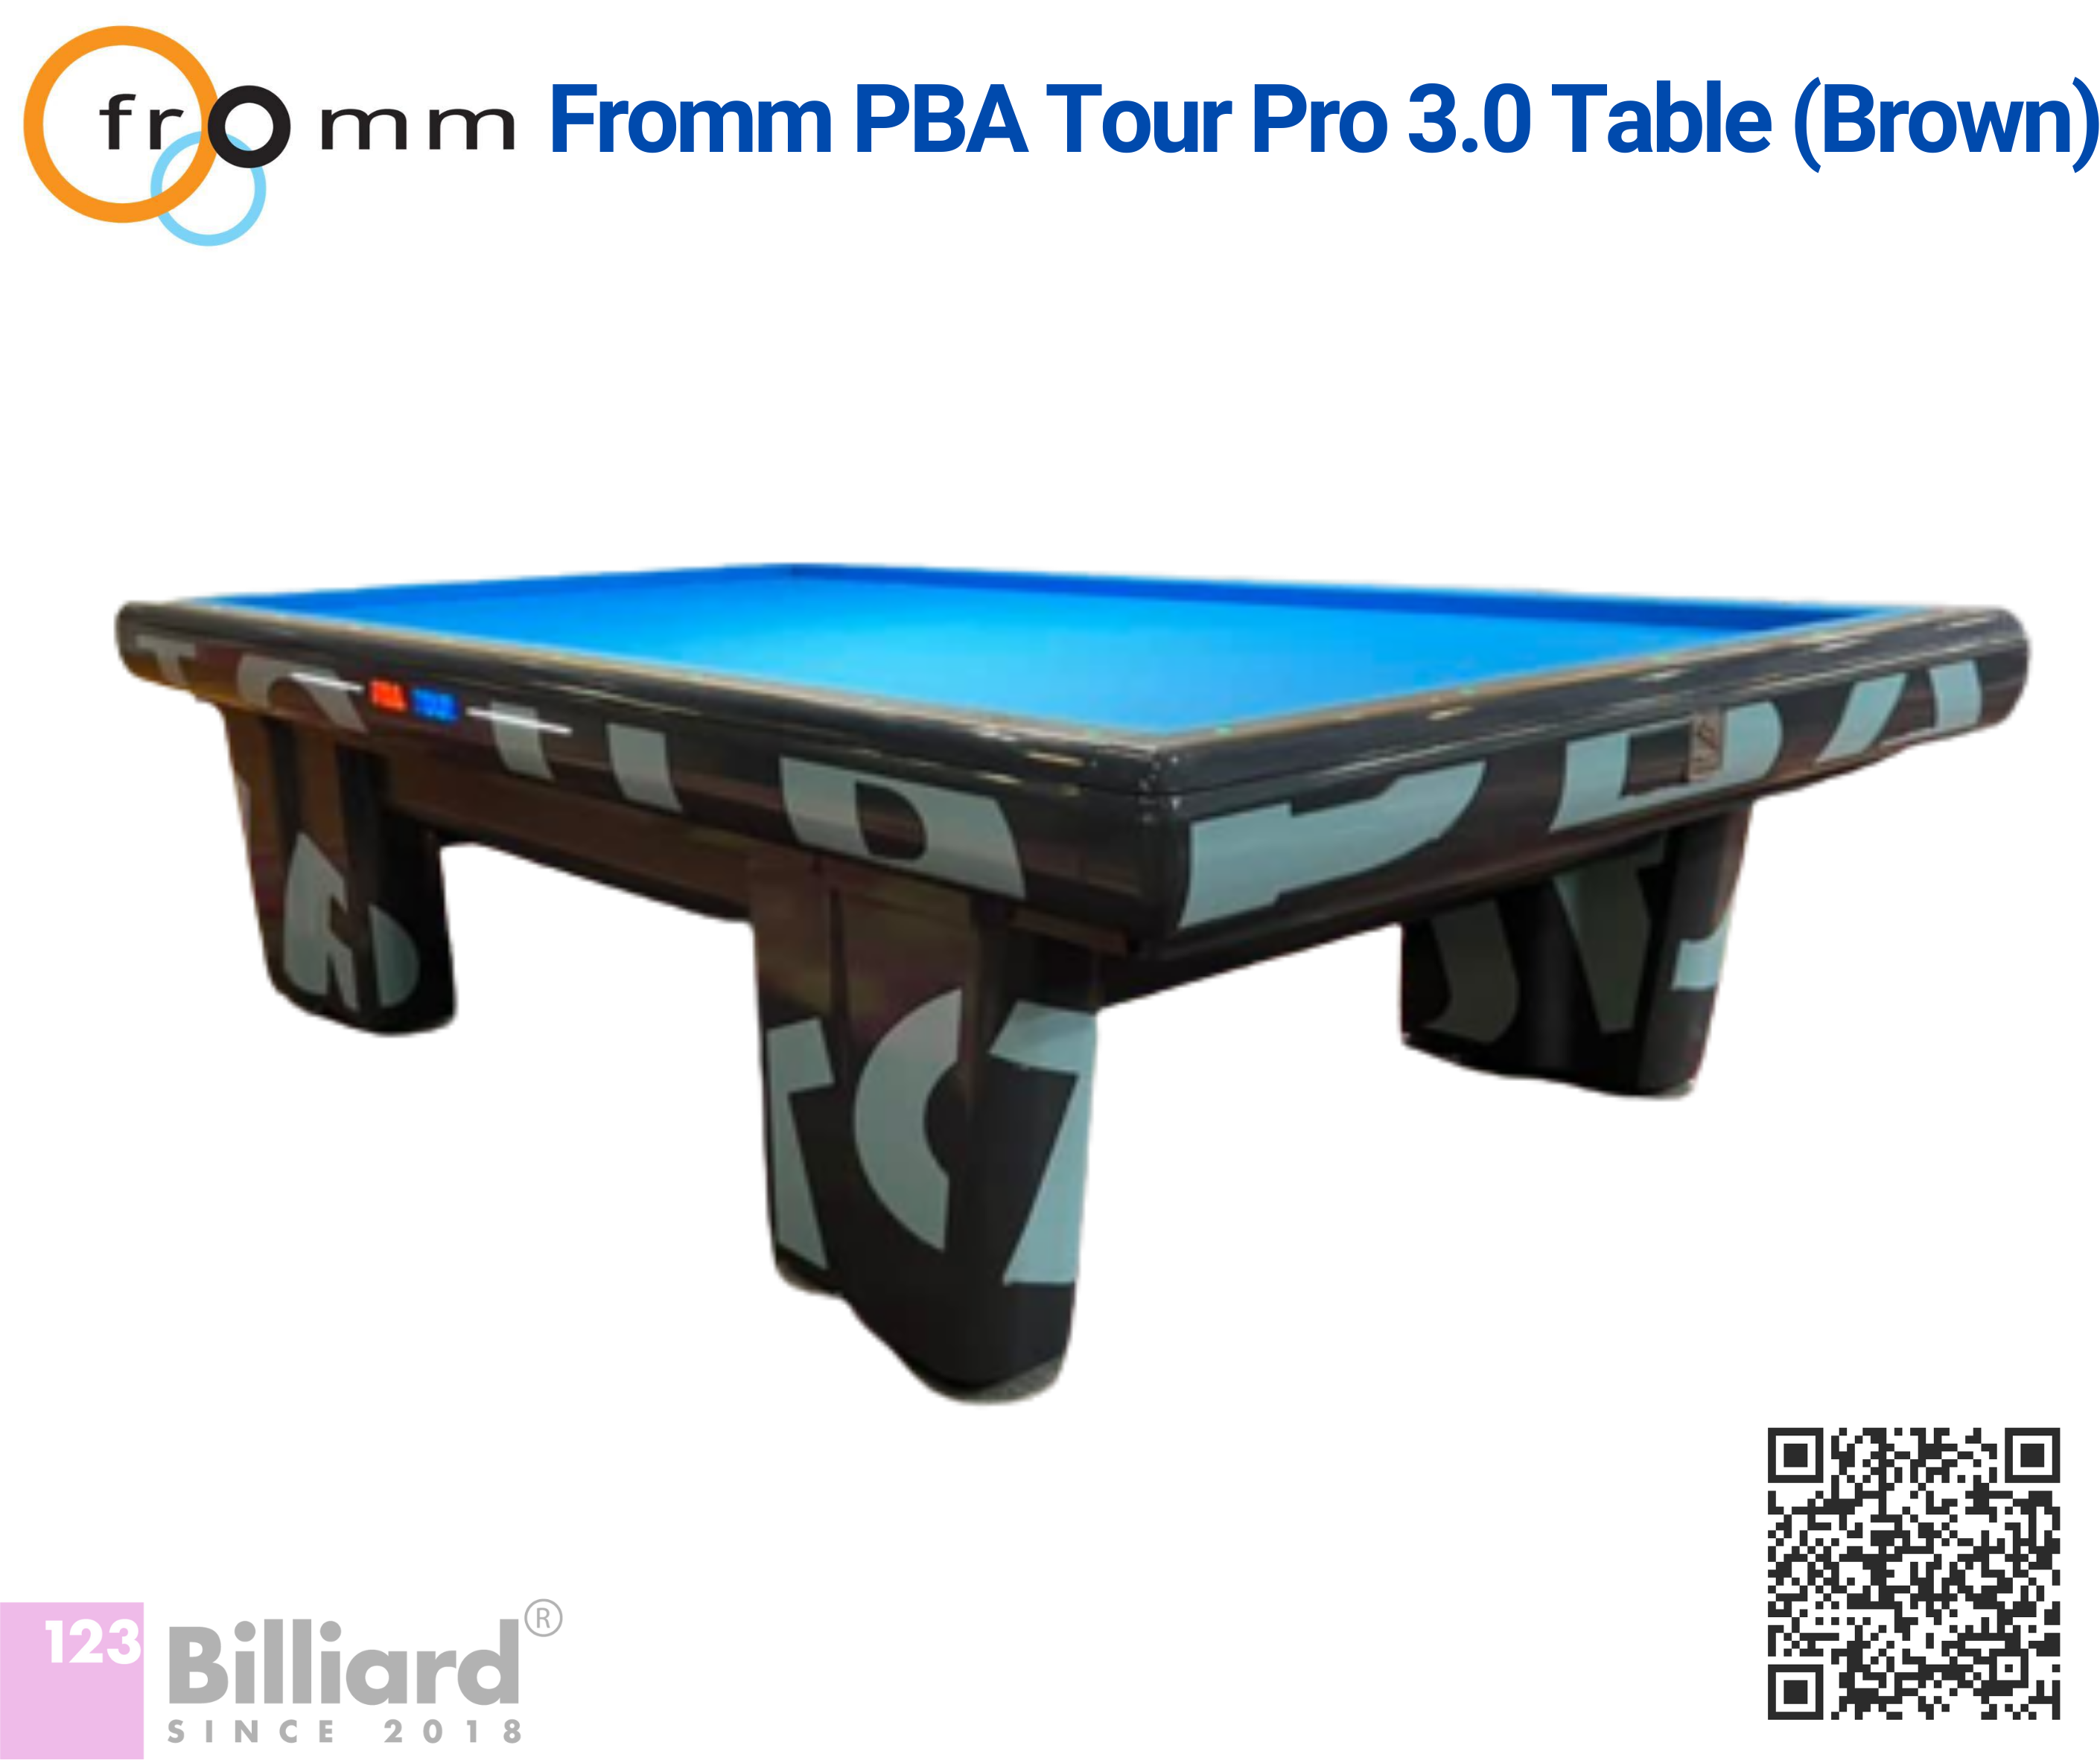 Bàn bida Fromm PBA Tour Pro 3.0 Table (Brown) - Giá: 190.000.000đ